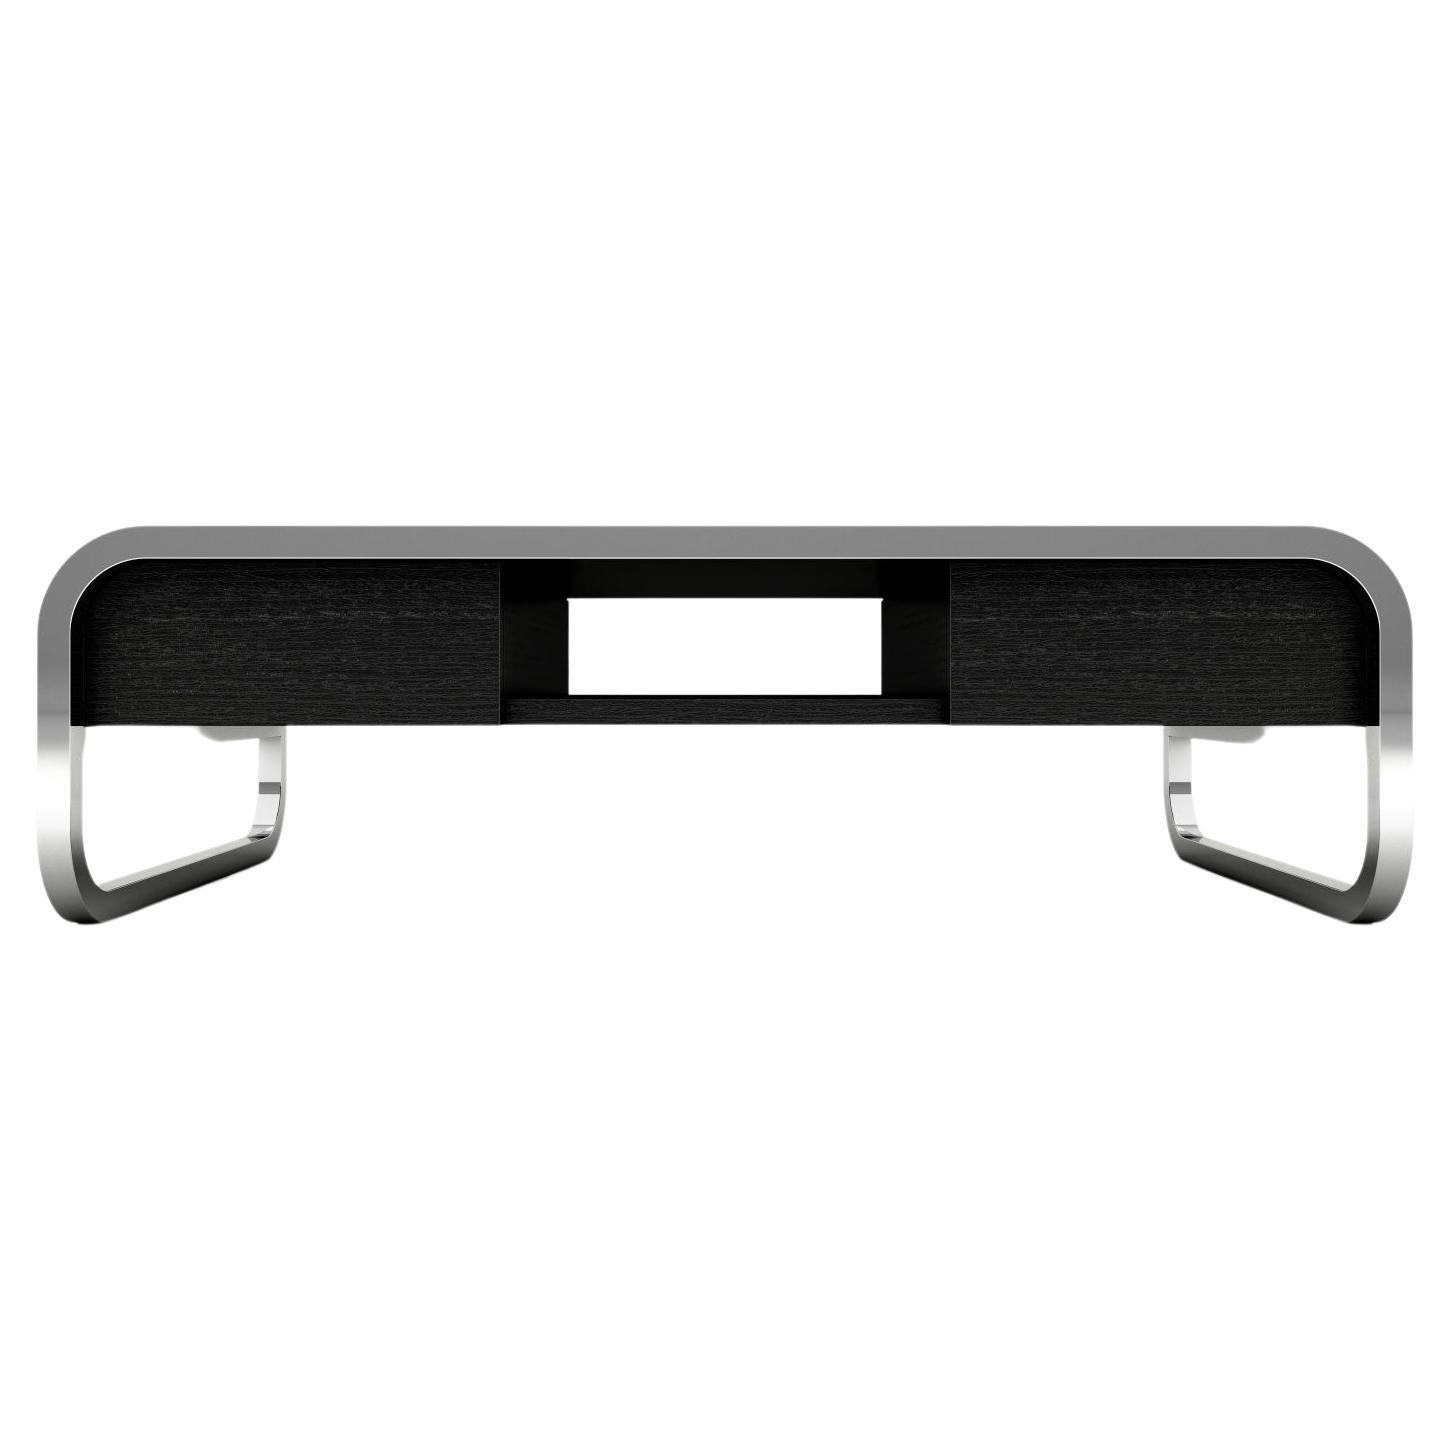 Mitternachts-Couchtisch – moderner schwarz lackierter Tisch mit Beinen aus Edelstahl